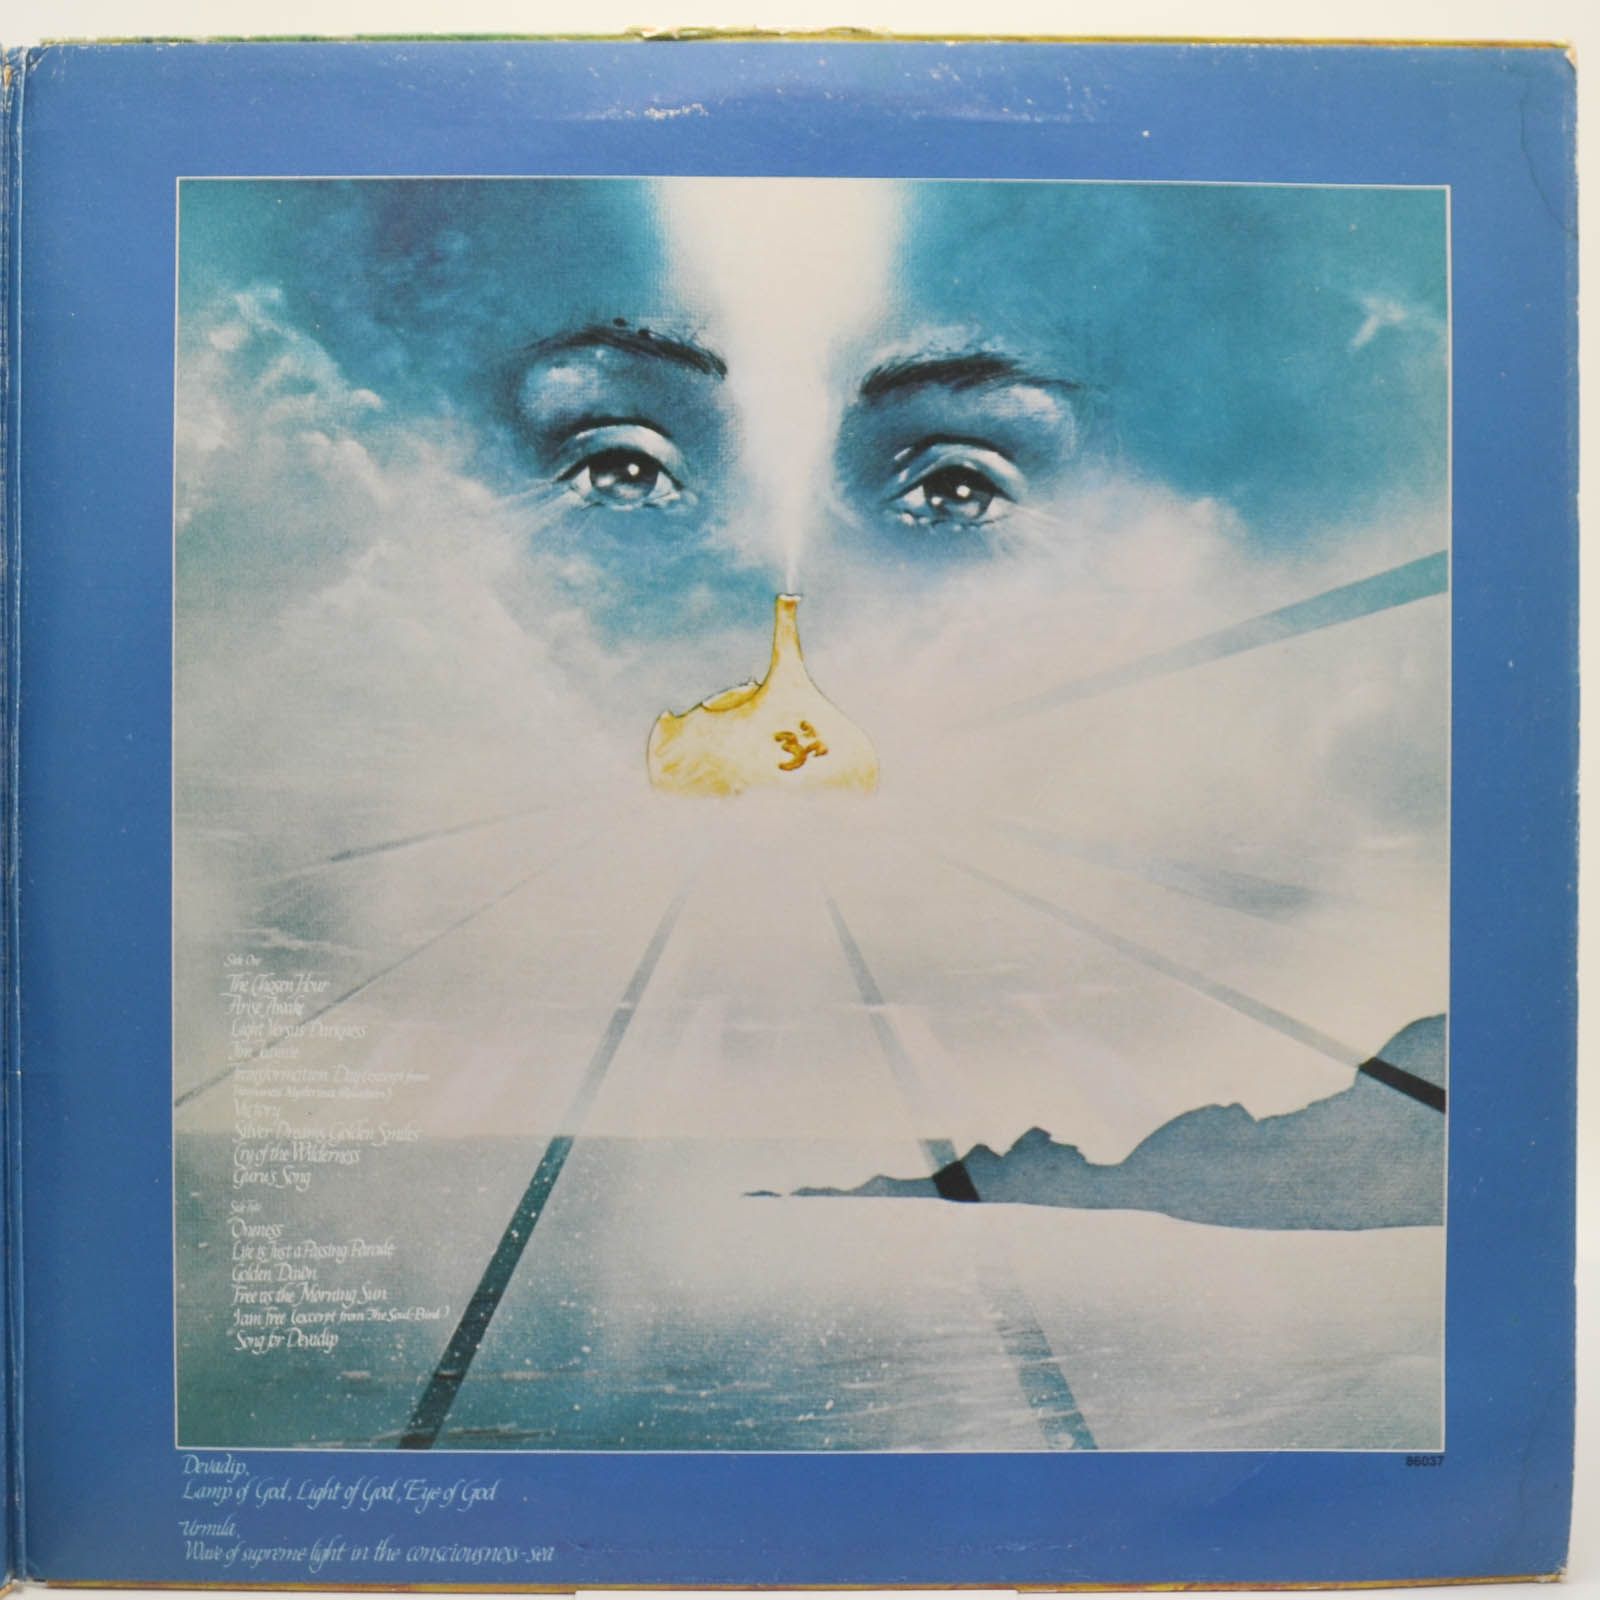 Devadip — Oneness (Silver Dreams - Golden Reality), 1979